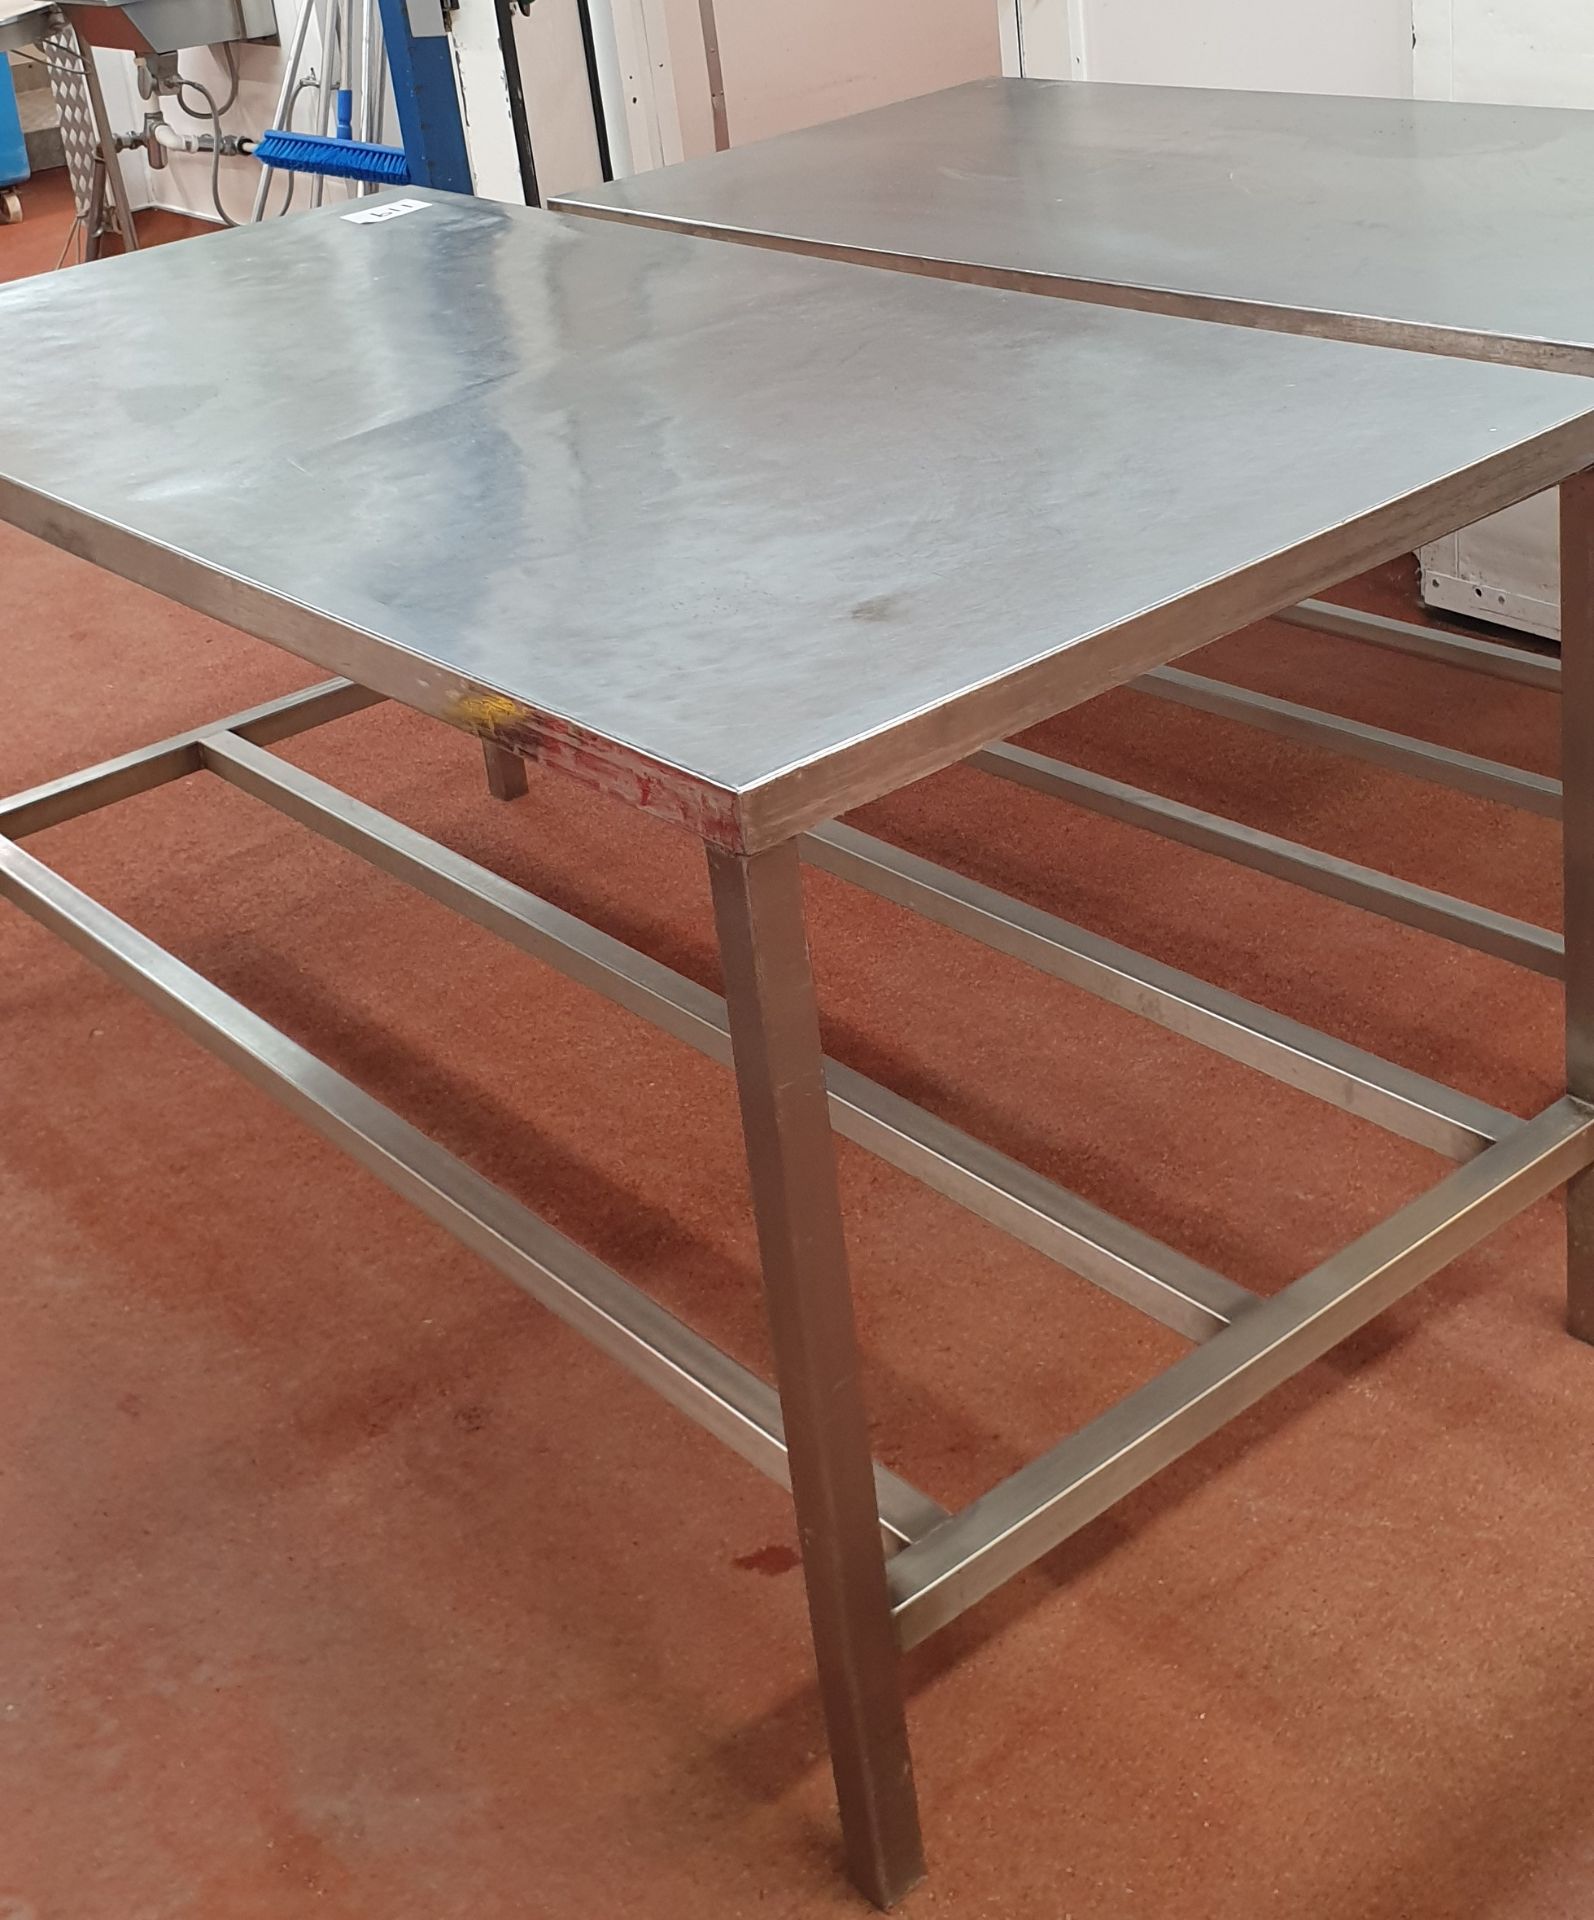 2 x Stainless Steel Prep Tables, 1.80m(l) x 0.86m(w) x 0.85m(h) and 1.52m(l) x 0.77m(w) x 0.84m(h) - Image 2 of 2